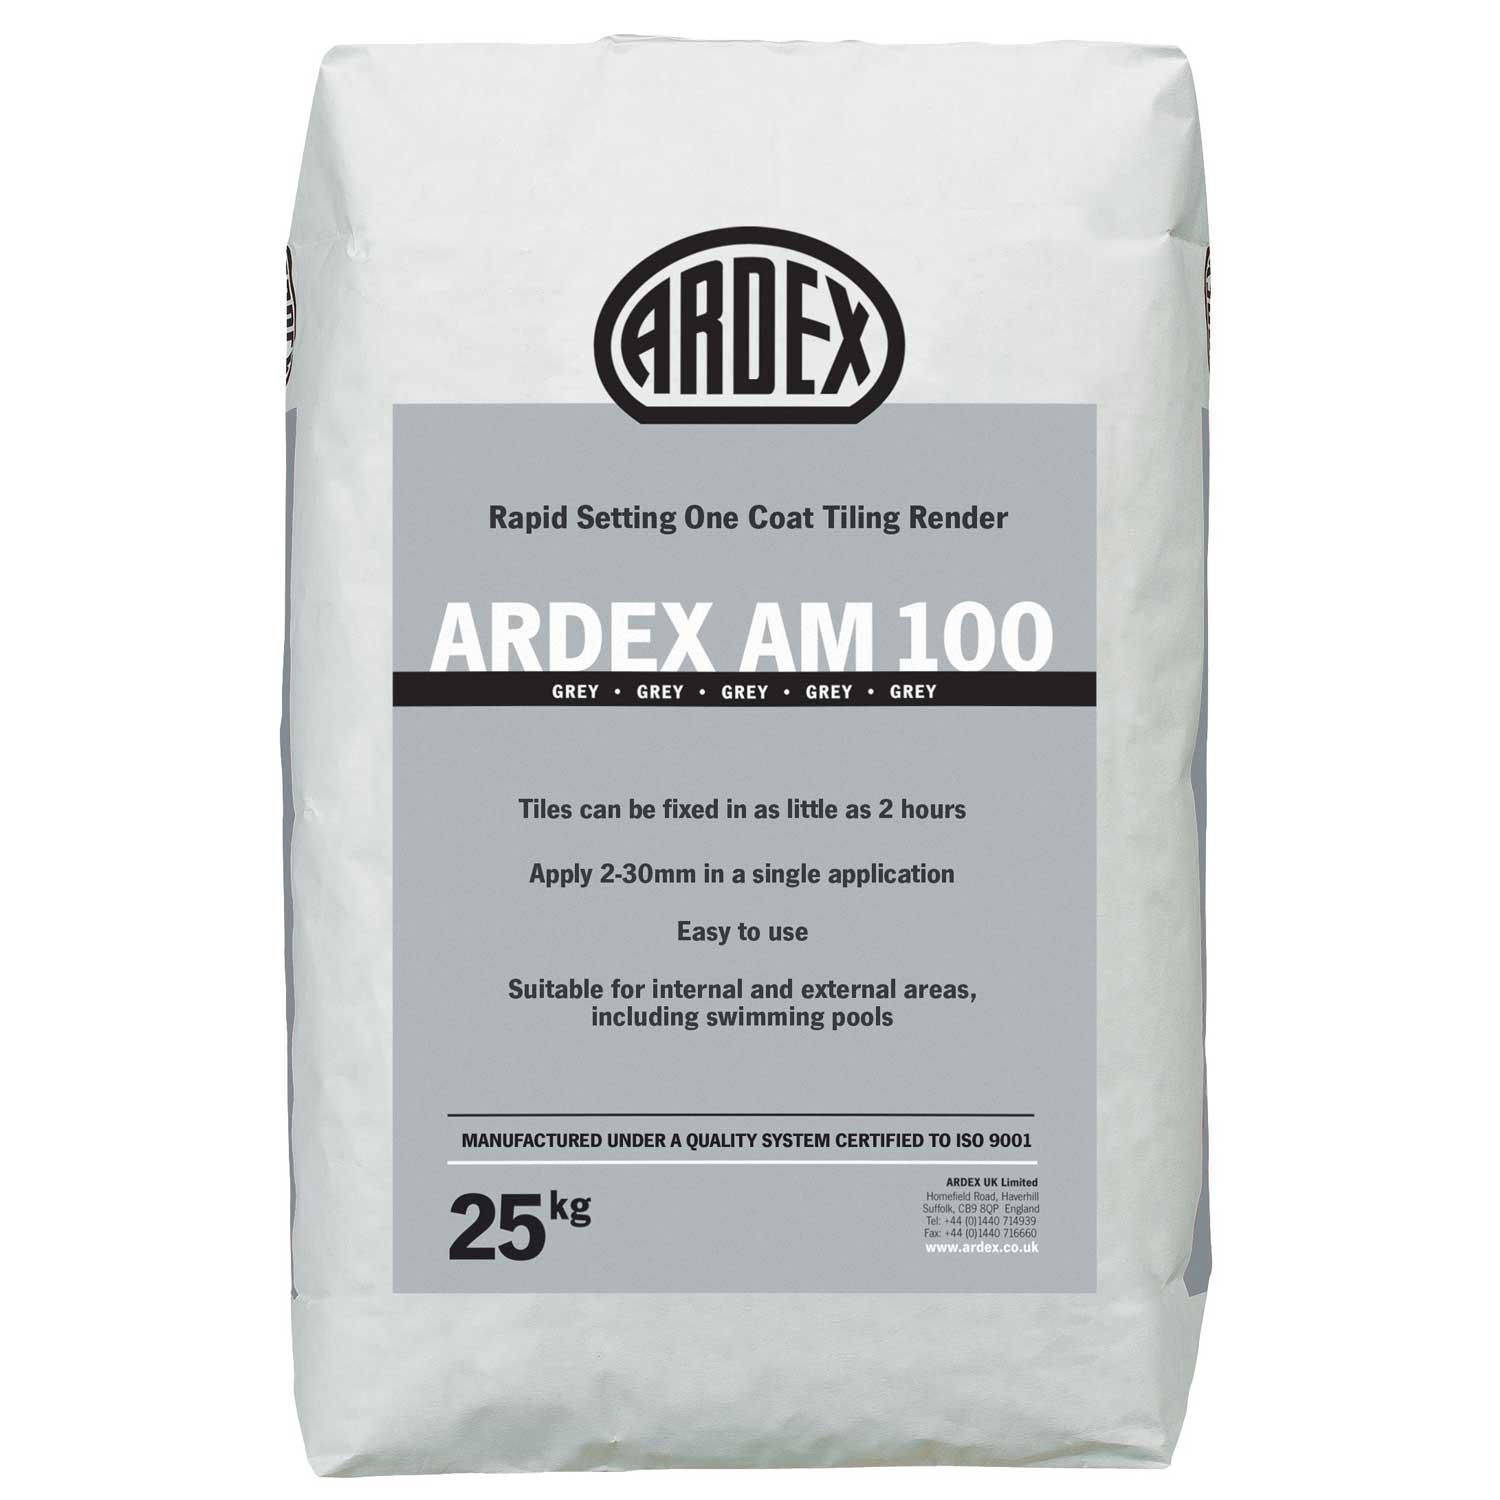 Ardex AM 100 Rapid Set Tiling Render 25 kg